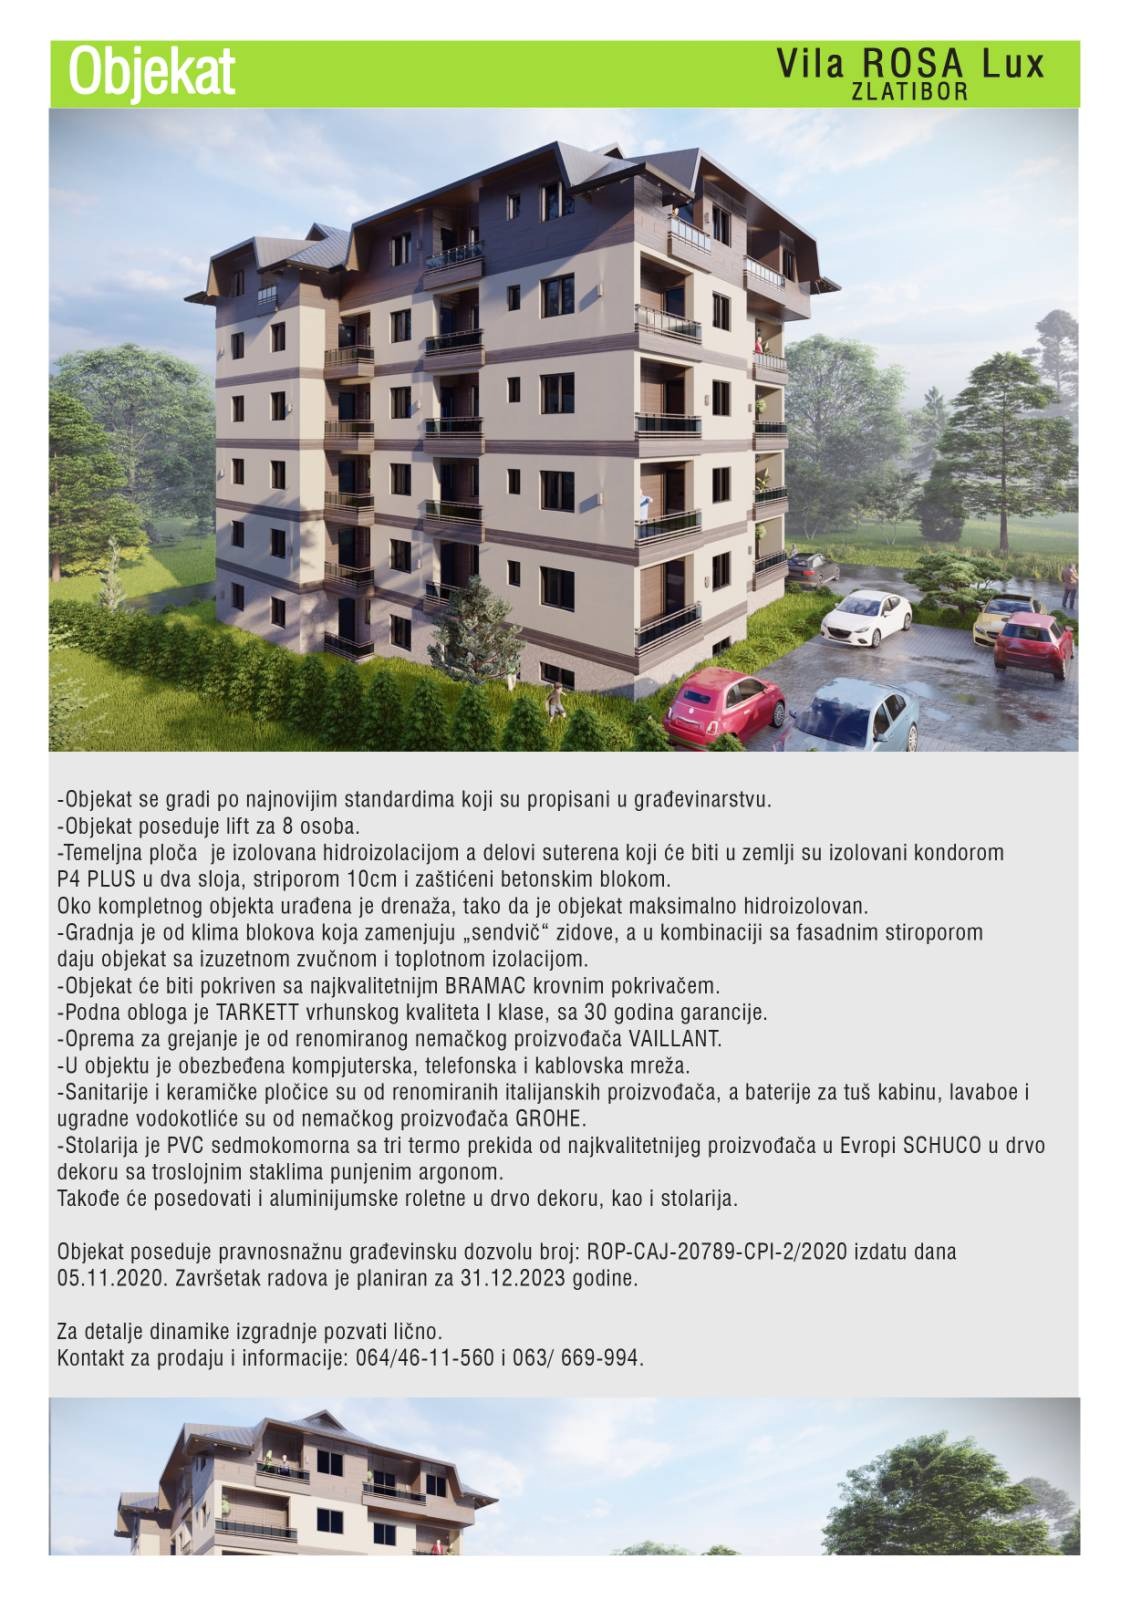 Prodaja apartmana na Zlatiboru u izgradnji direktno od investitora bez posrednika